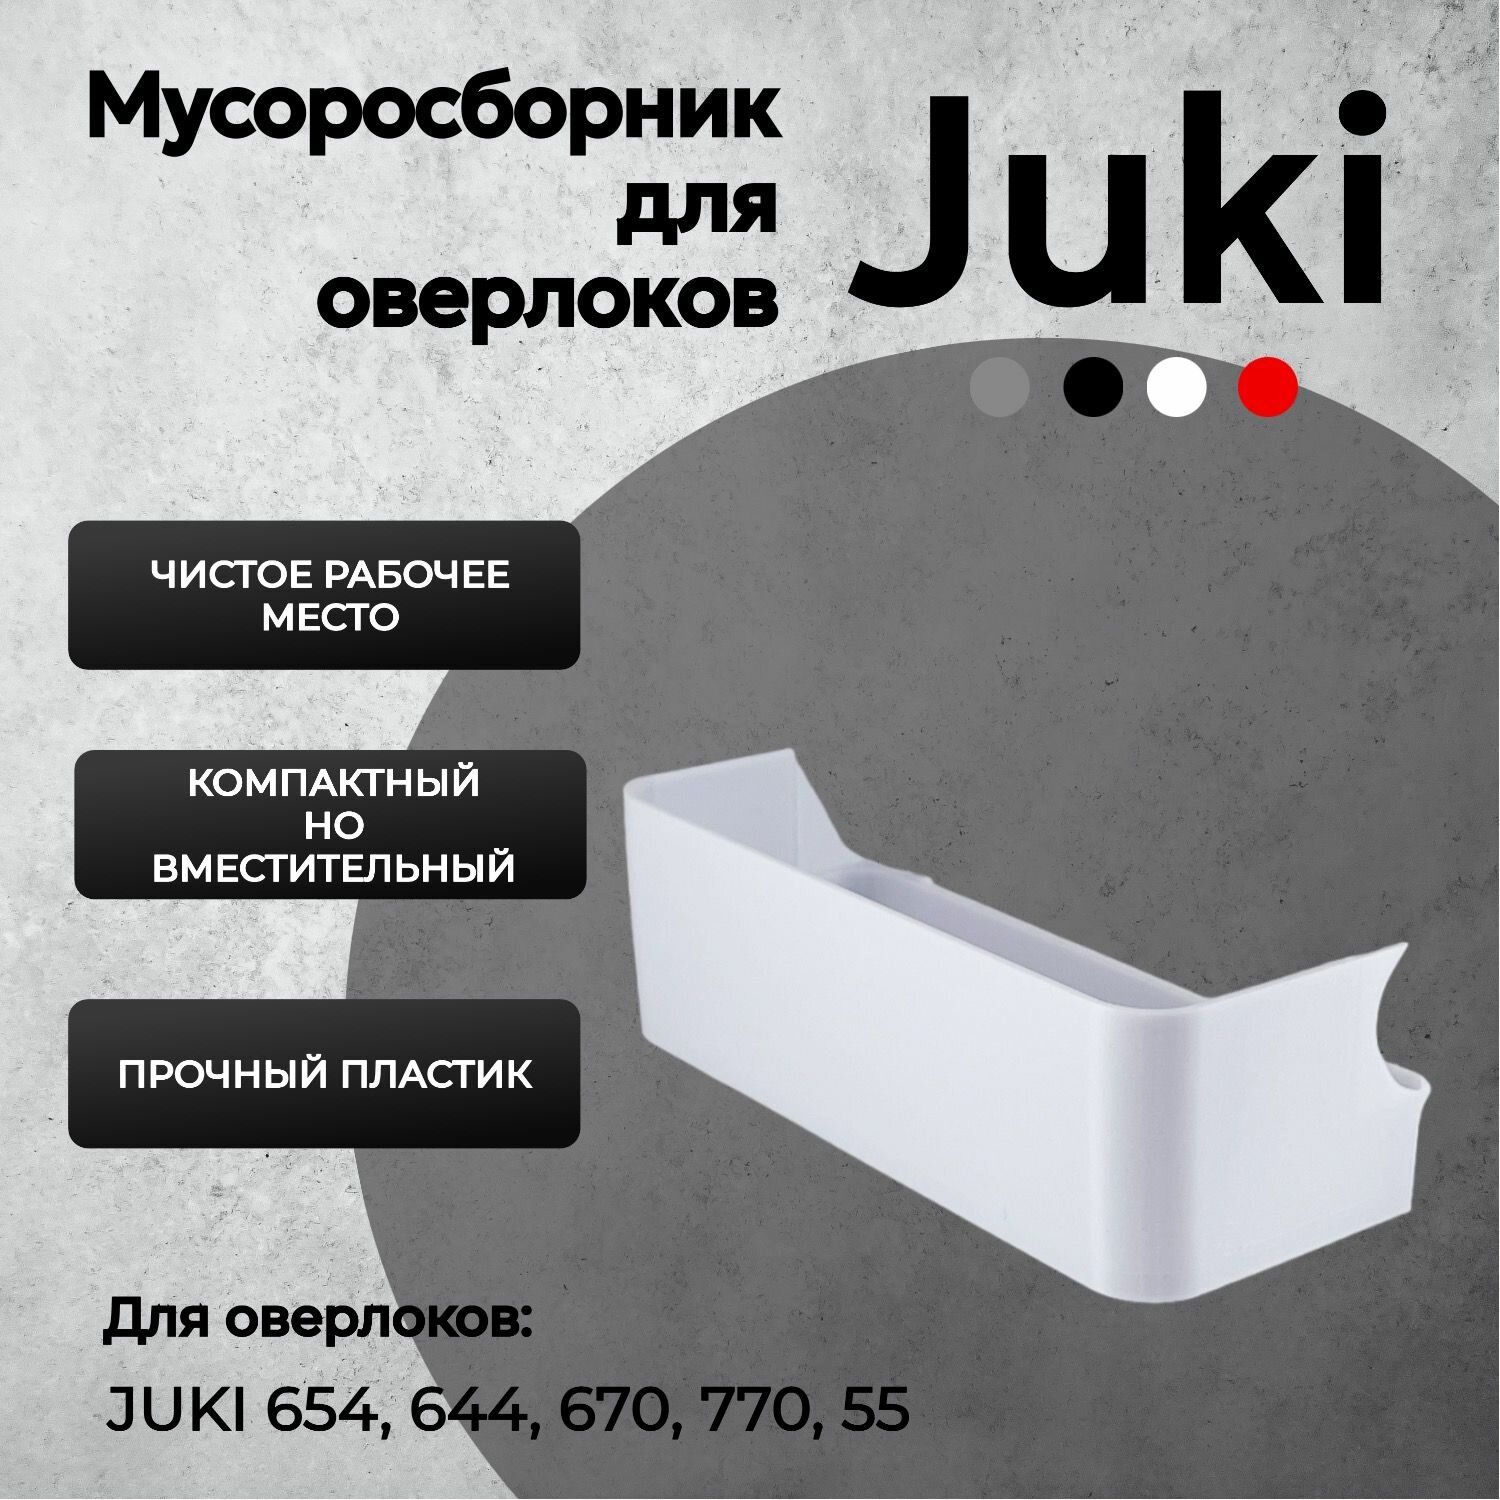 Мусоросборник для оверлока Juki 654 - контейнер (лоток) для обрезков для оверлока Juki